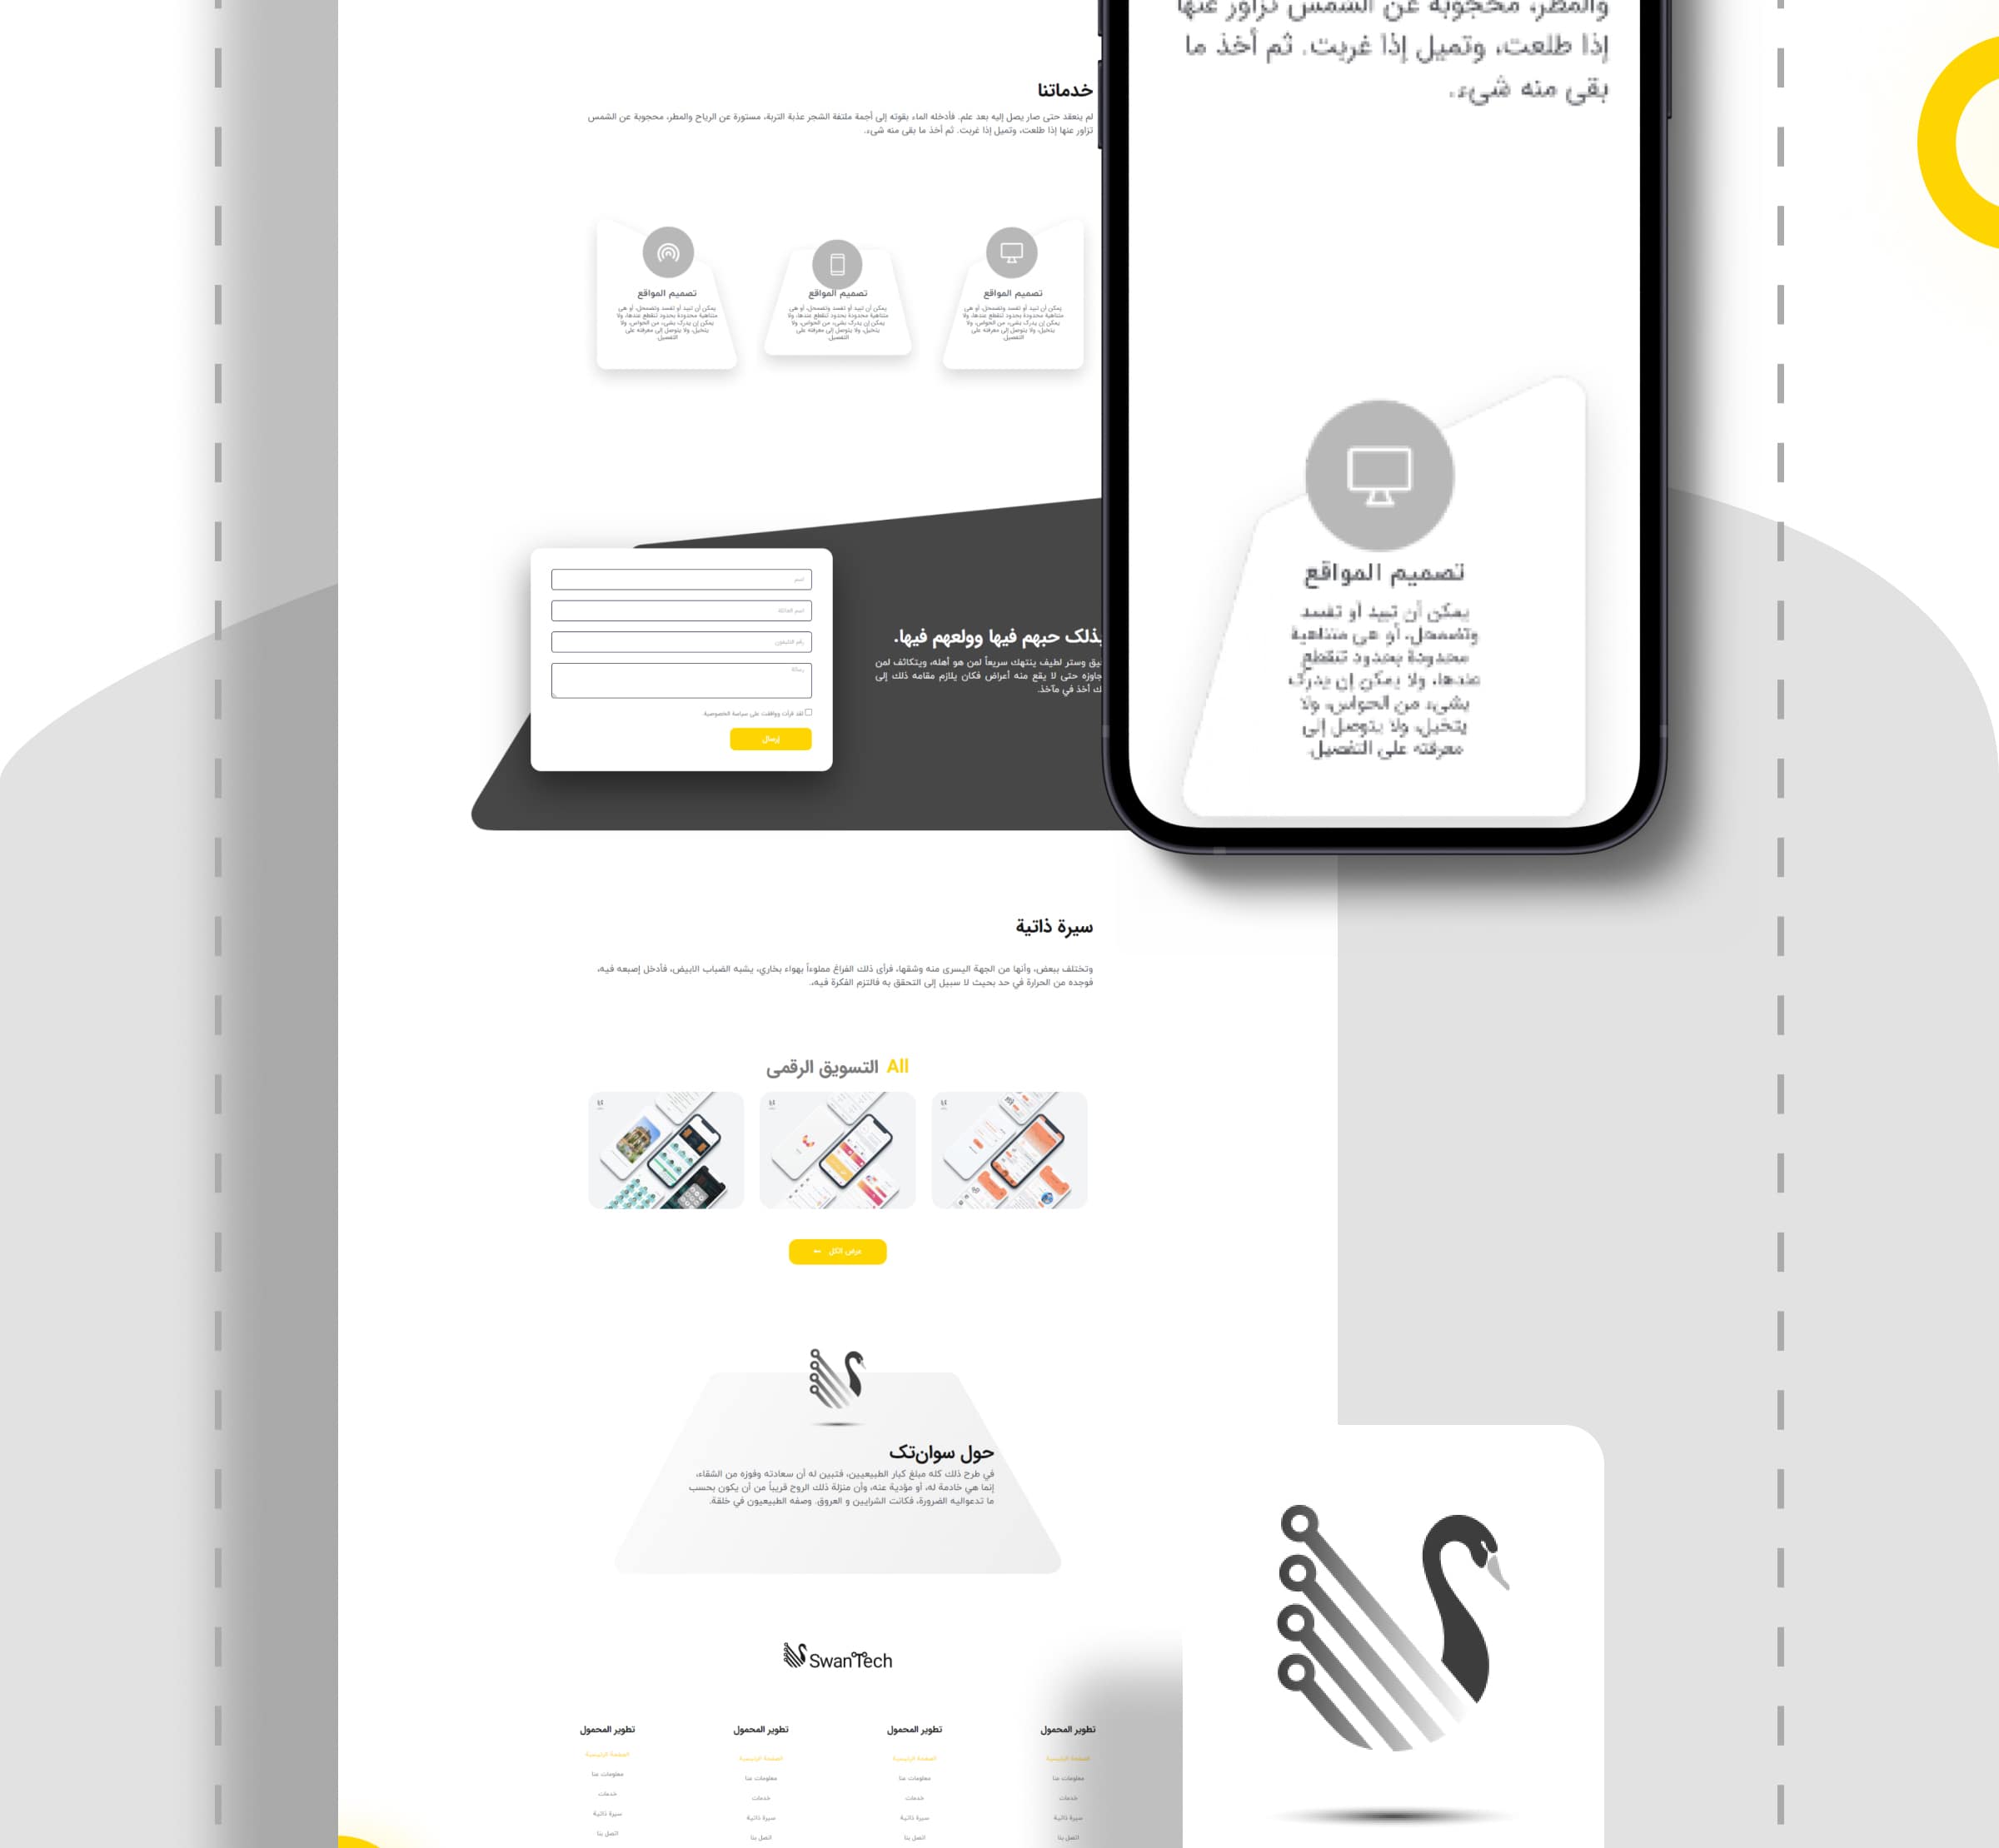 طراحی سایت سوان تک نسخه عربی